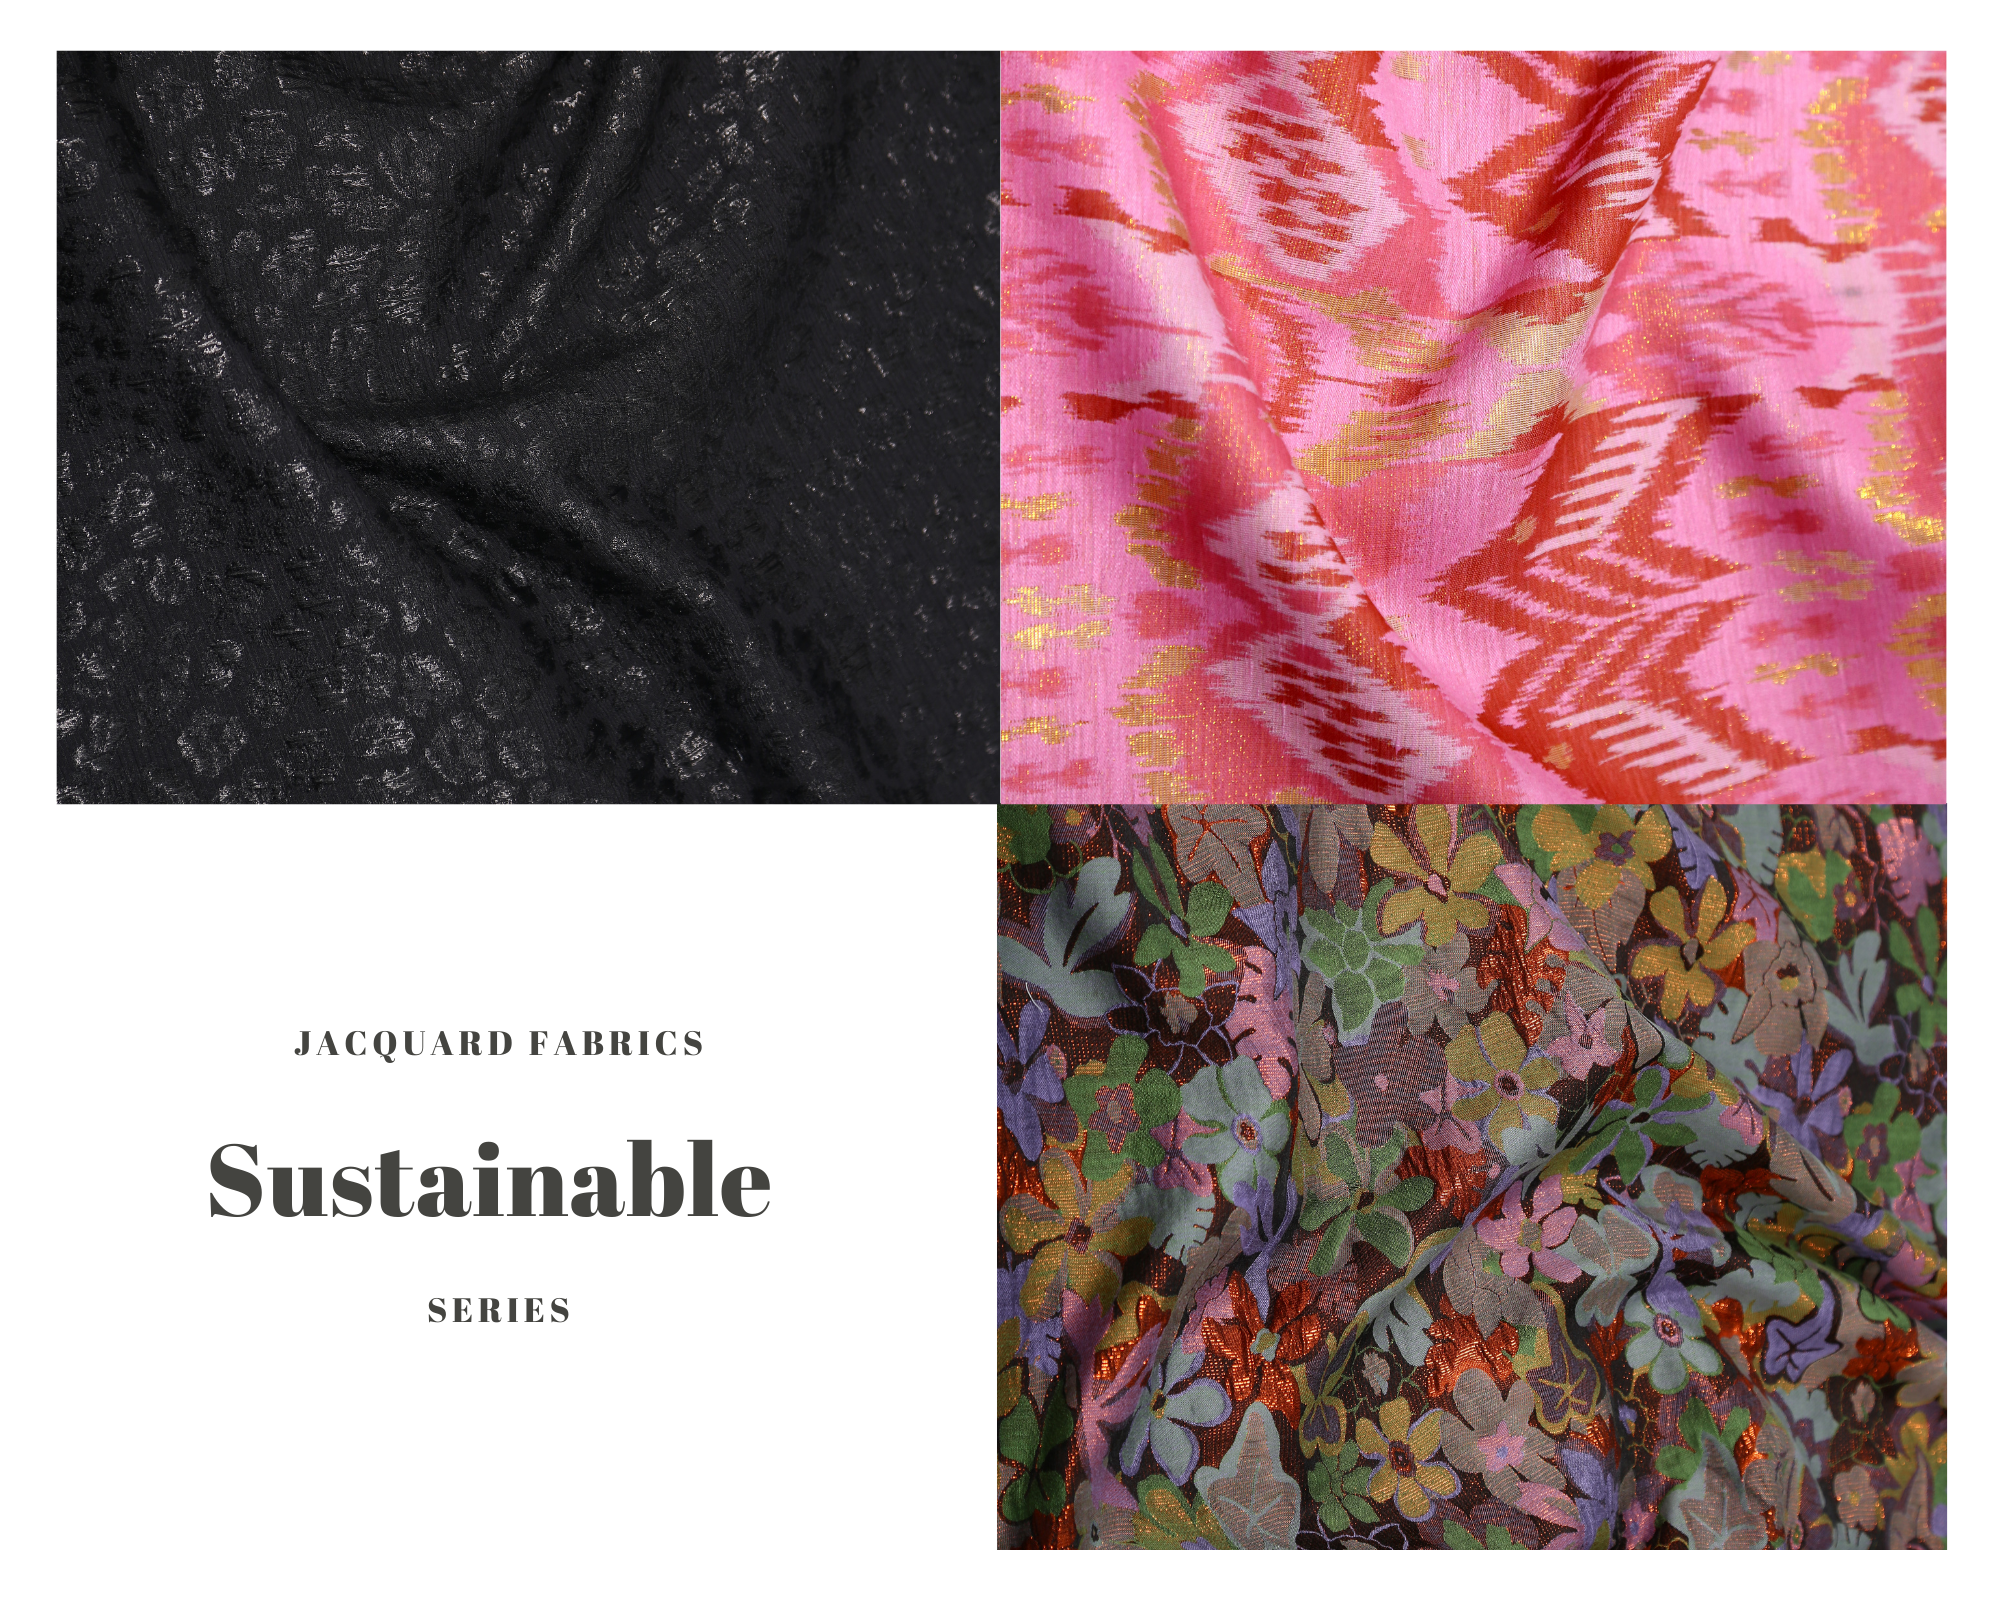 Shingora Sustainable Jacquard fabrics